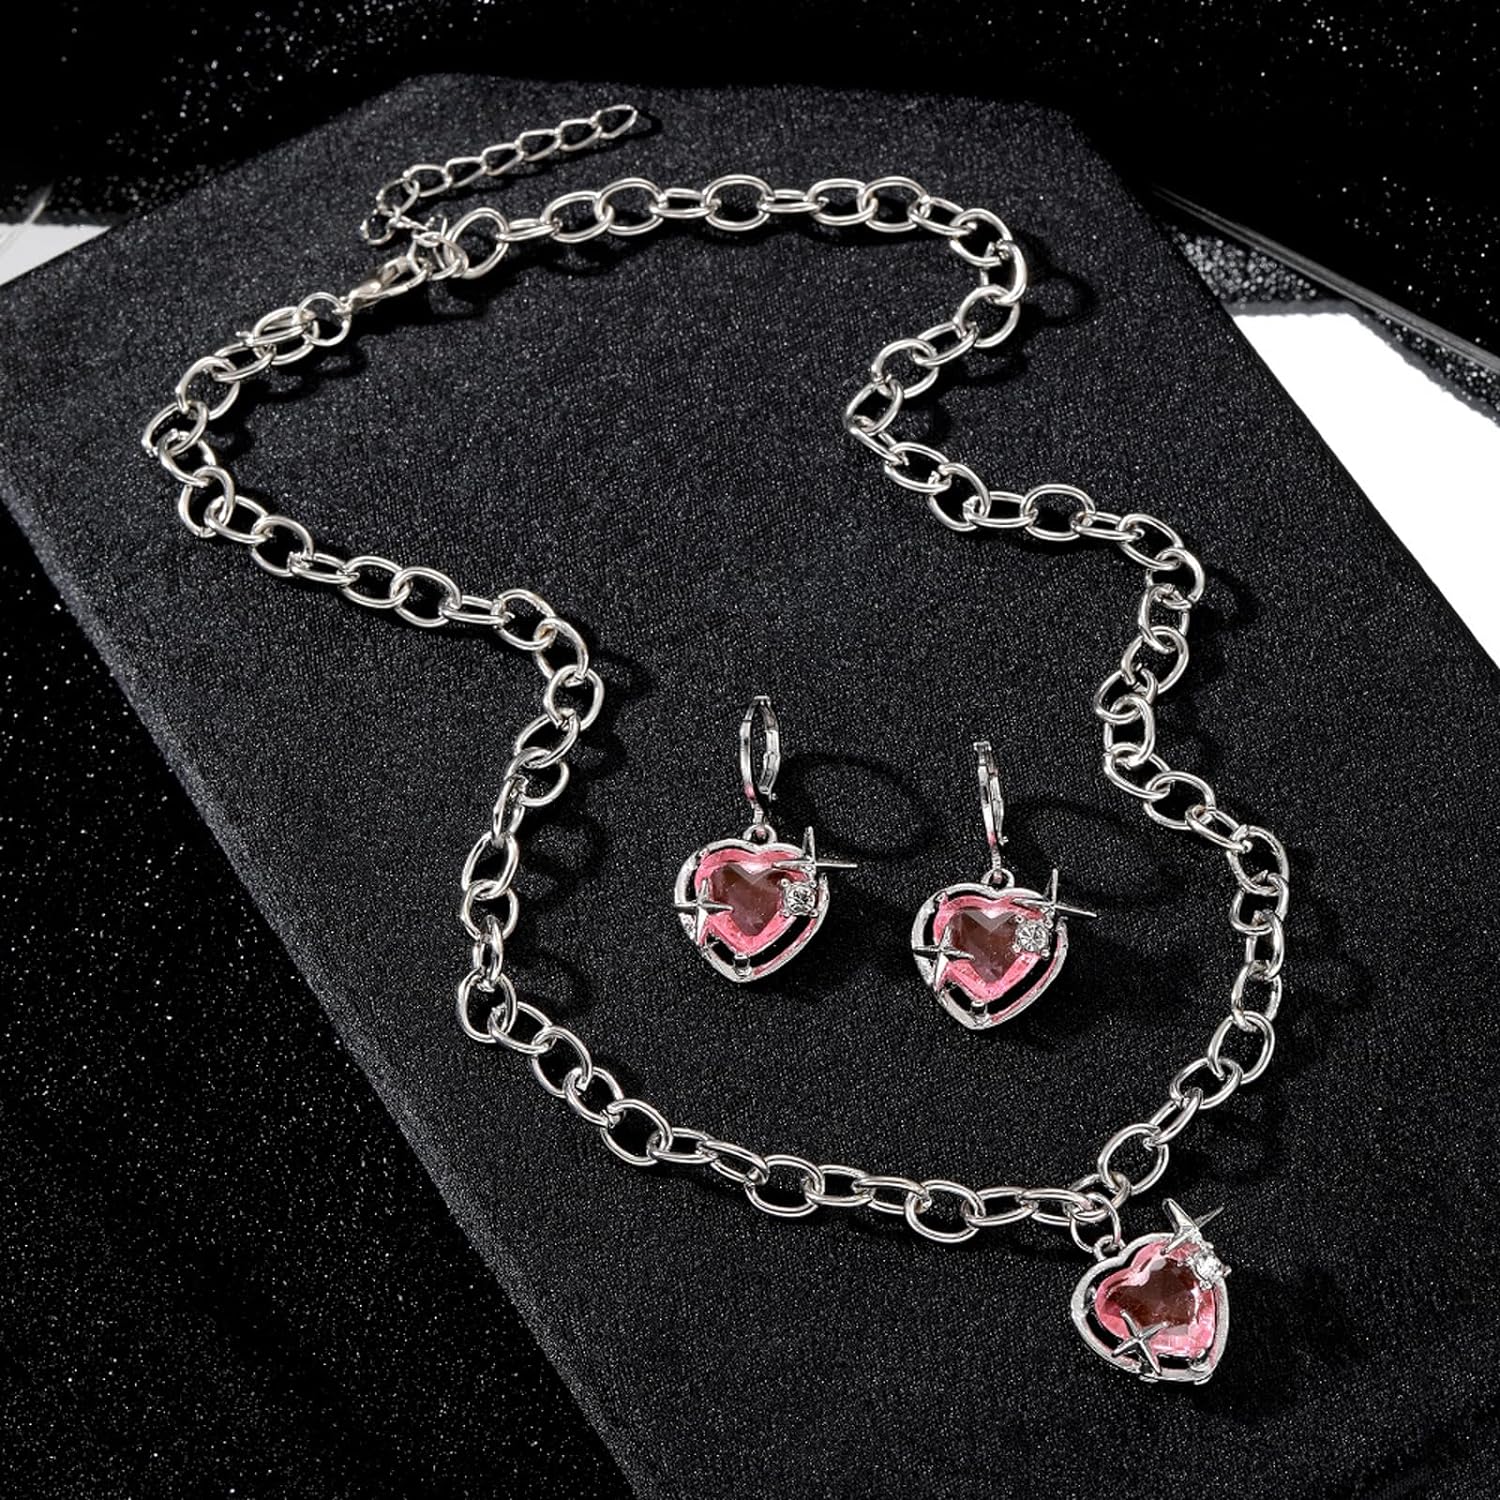 suofrun Hot Pink Love Heart Earrings  Necklace Jewelry Set For Girls Women Crystal Alloy Earrings Necklace Set Jewelry Gifts For Valentines Day Christmas Wife Girlfriend Her